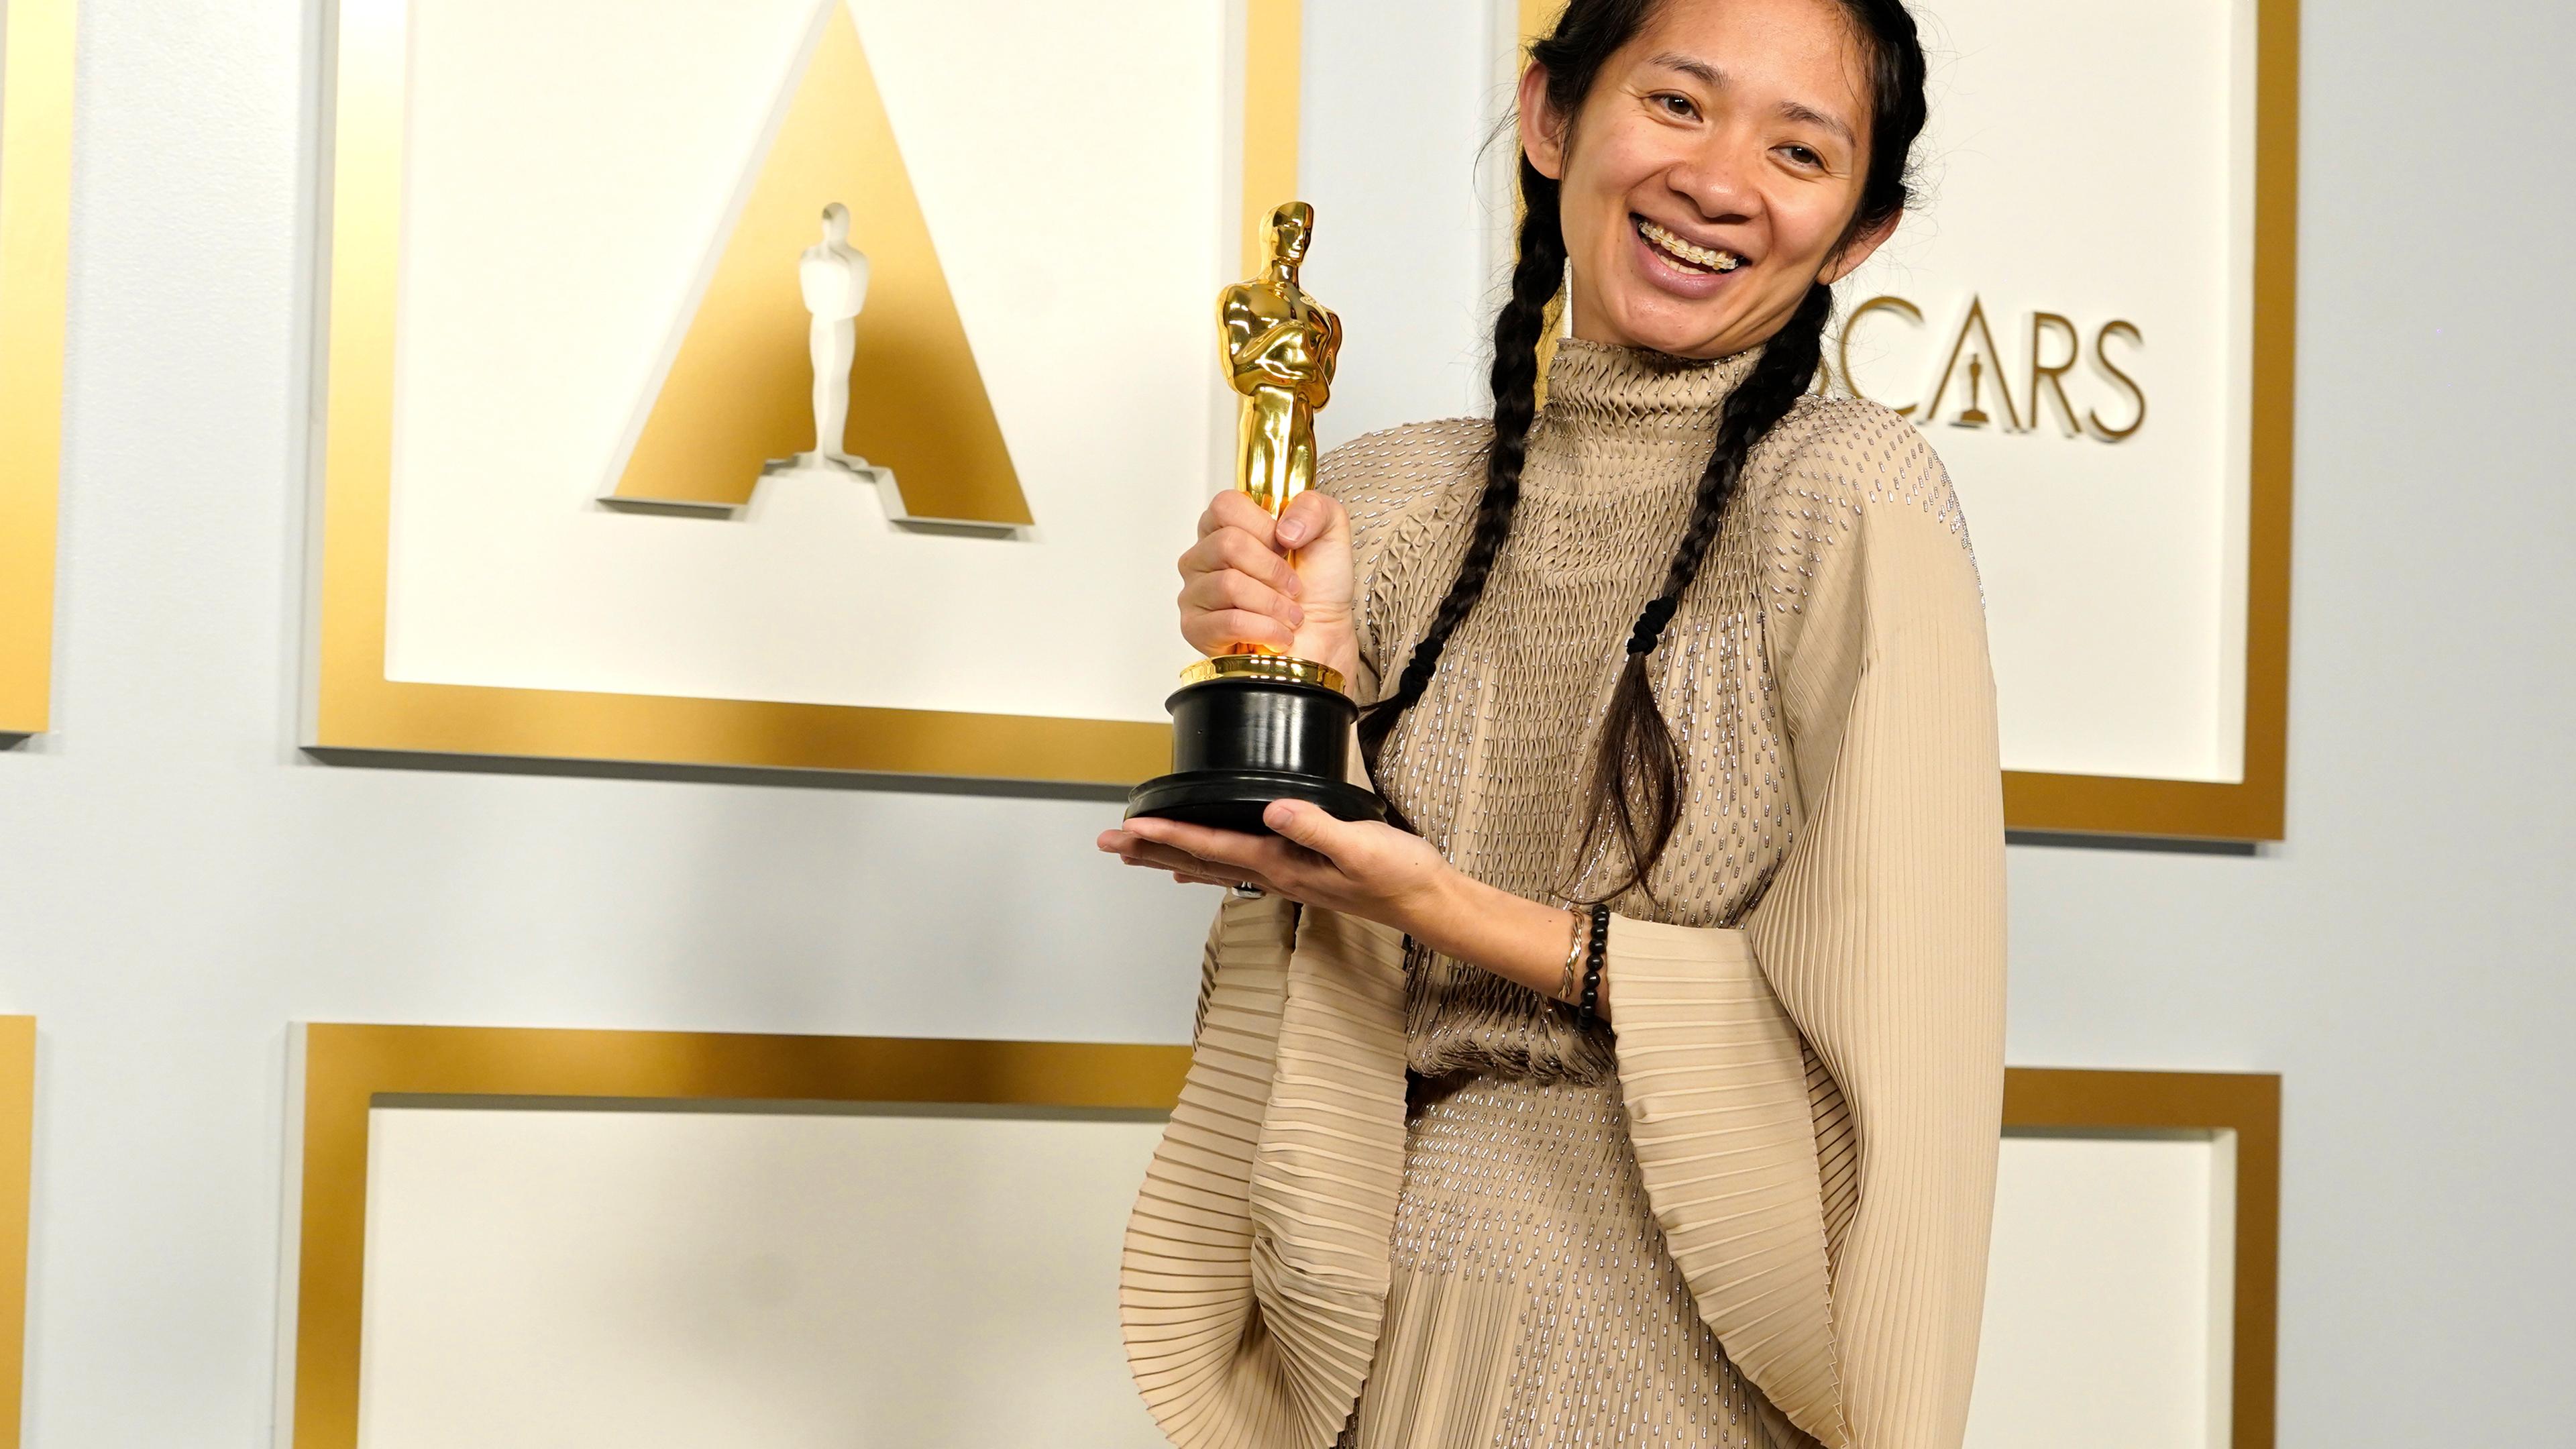 Eine junge chinesische Frau in einem golden glänzenden Kleid hält lachend eine goldene Oscar-Statue.